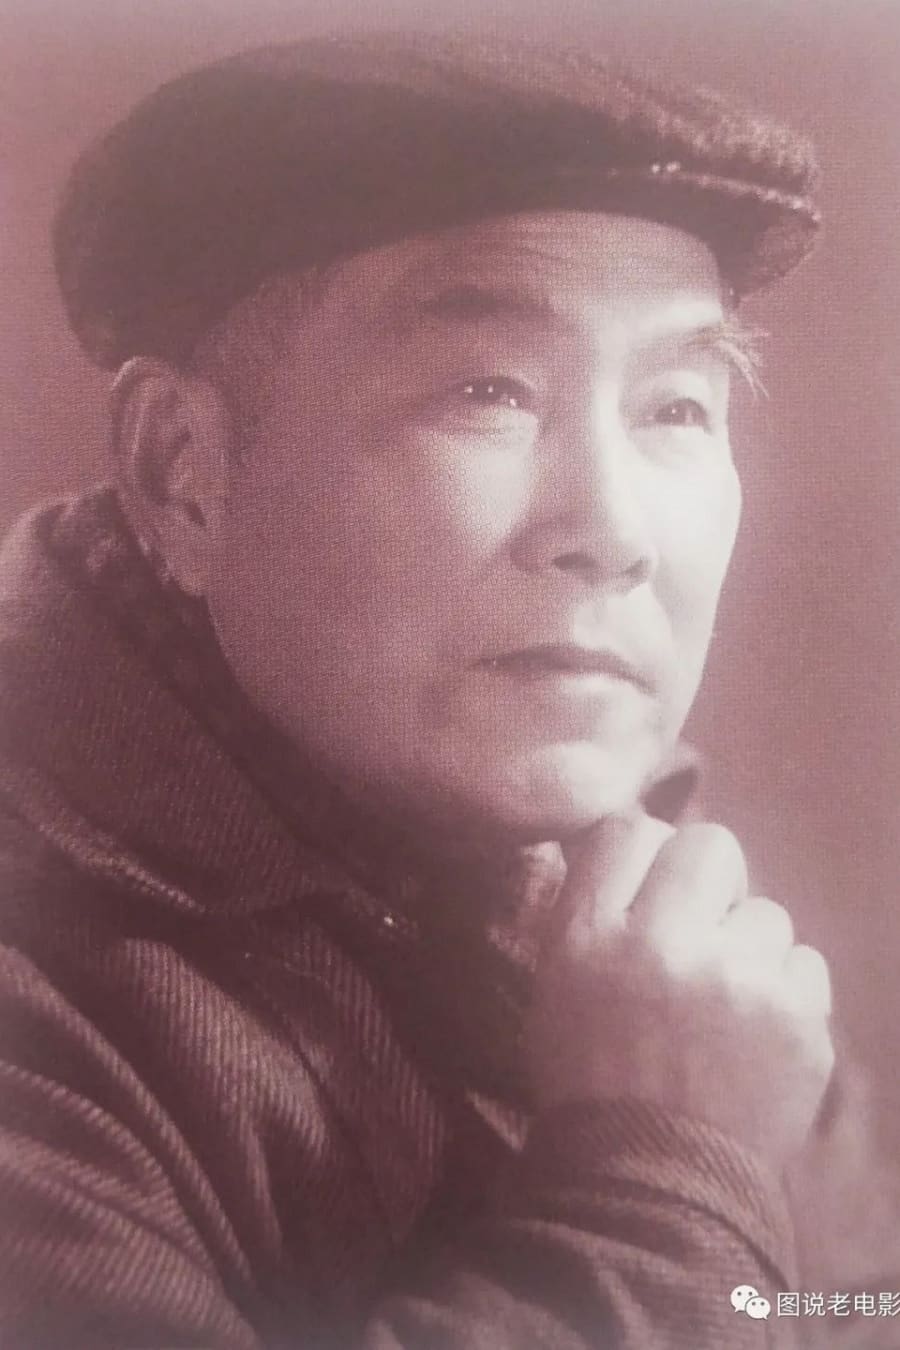 Jianghai Wu